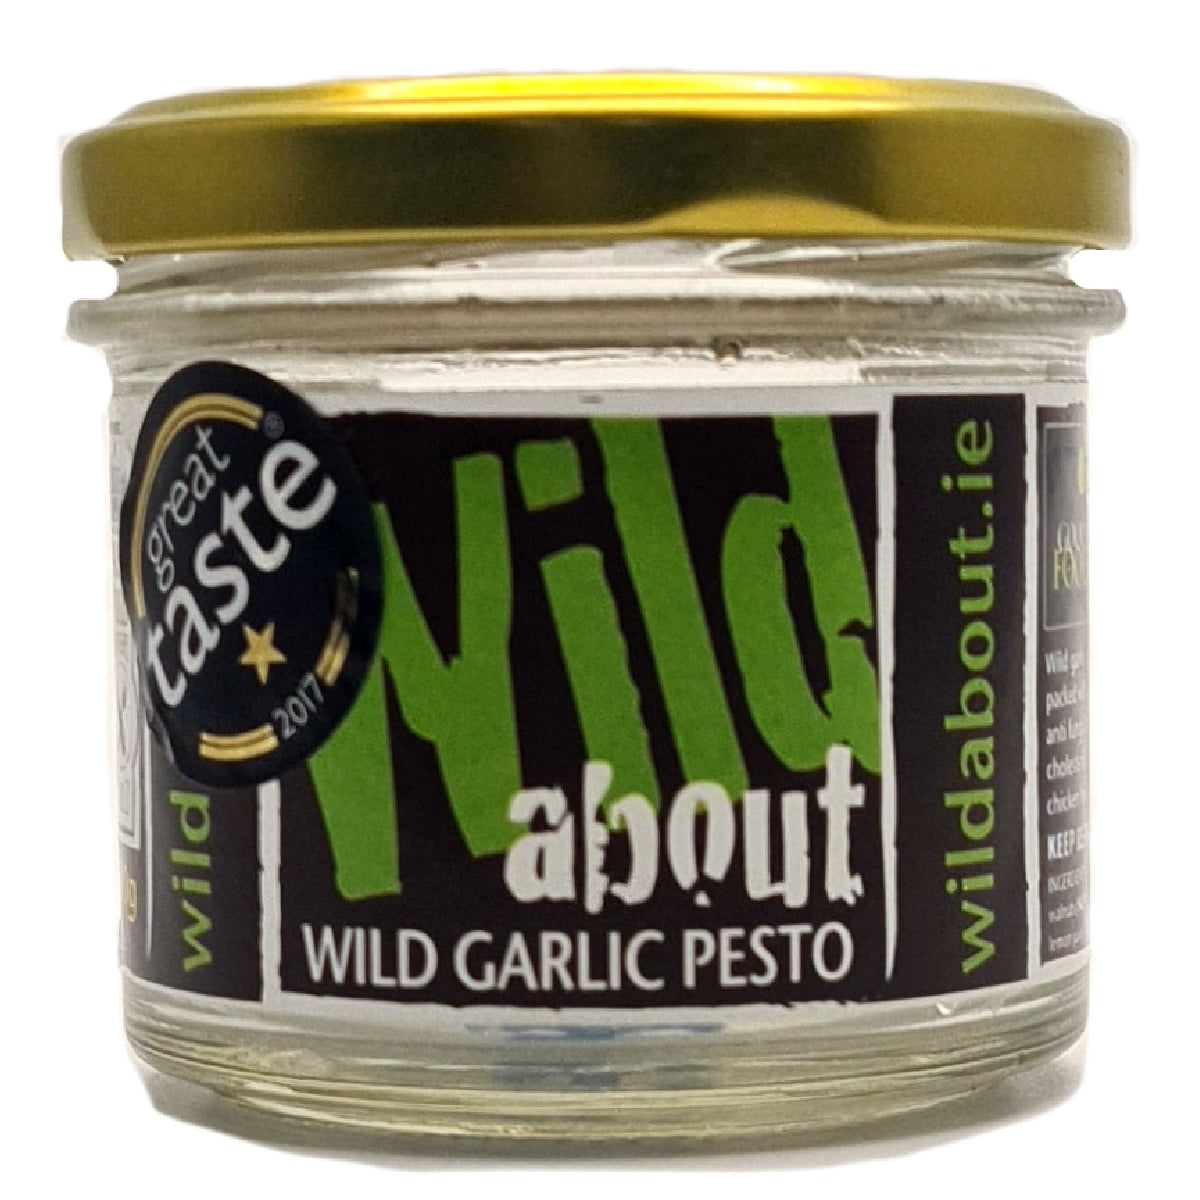 Wild About Wild Garlic Pesto 110g